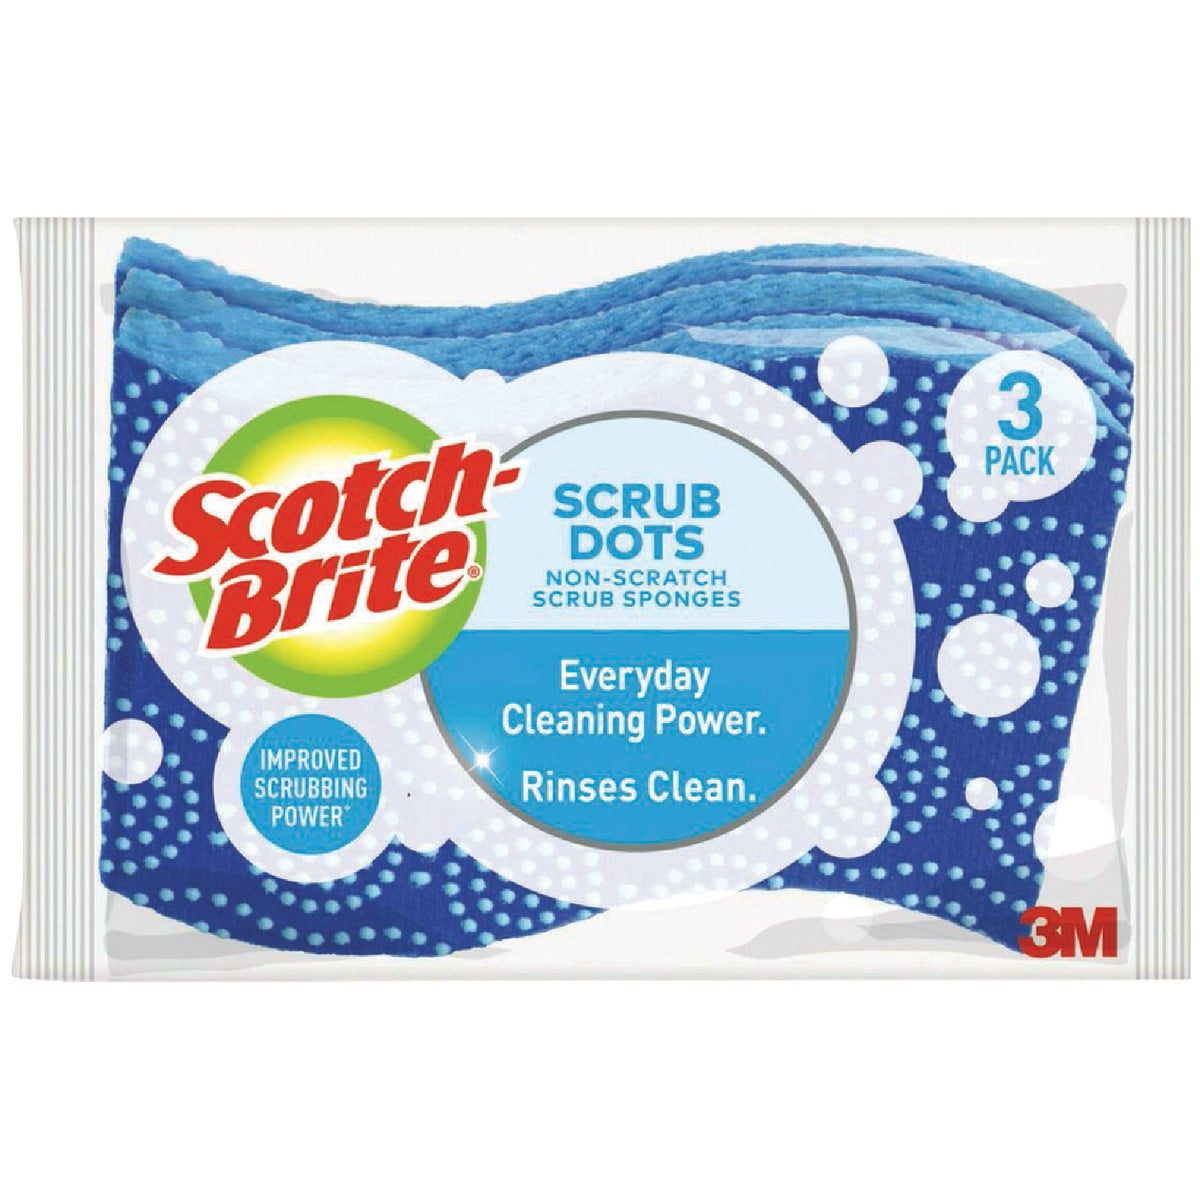 Scotch-Brite Scrub Dots Non-Scratch Scrub Sponge (3-Pack)